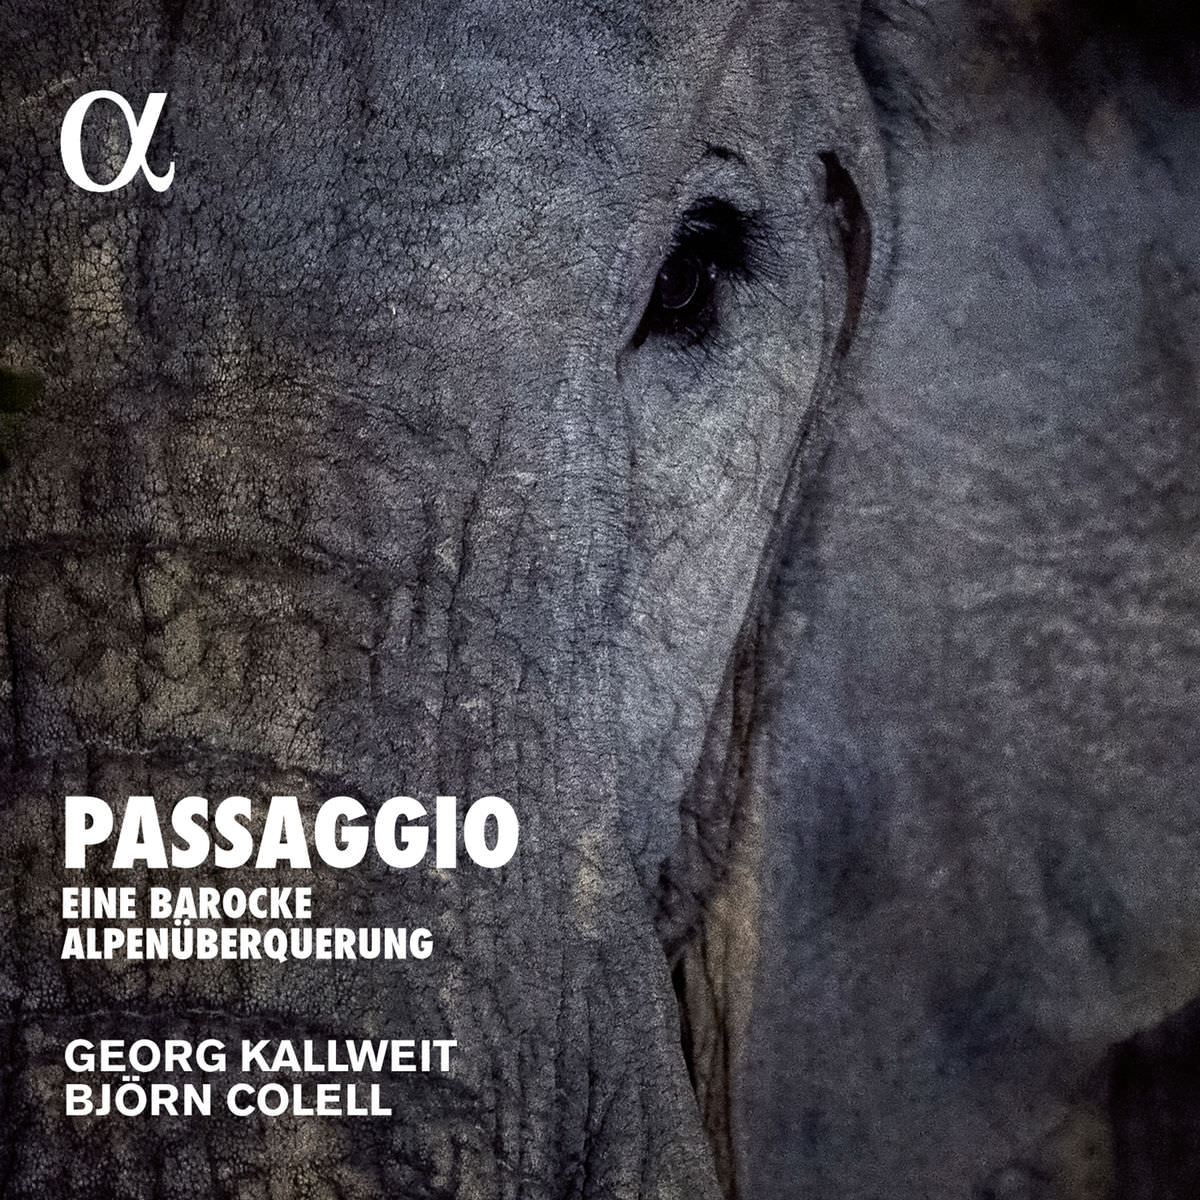 Georg Kallweit & Bjorn Colell – Passaggio, eine barocke Alpenuberquerung (2017) [FLAC 24bit/96kHz]